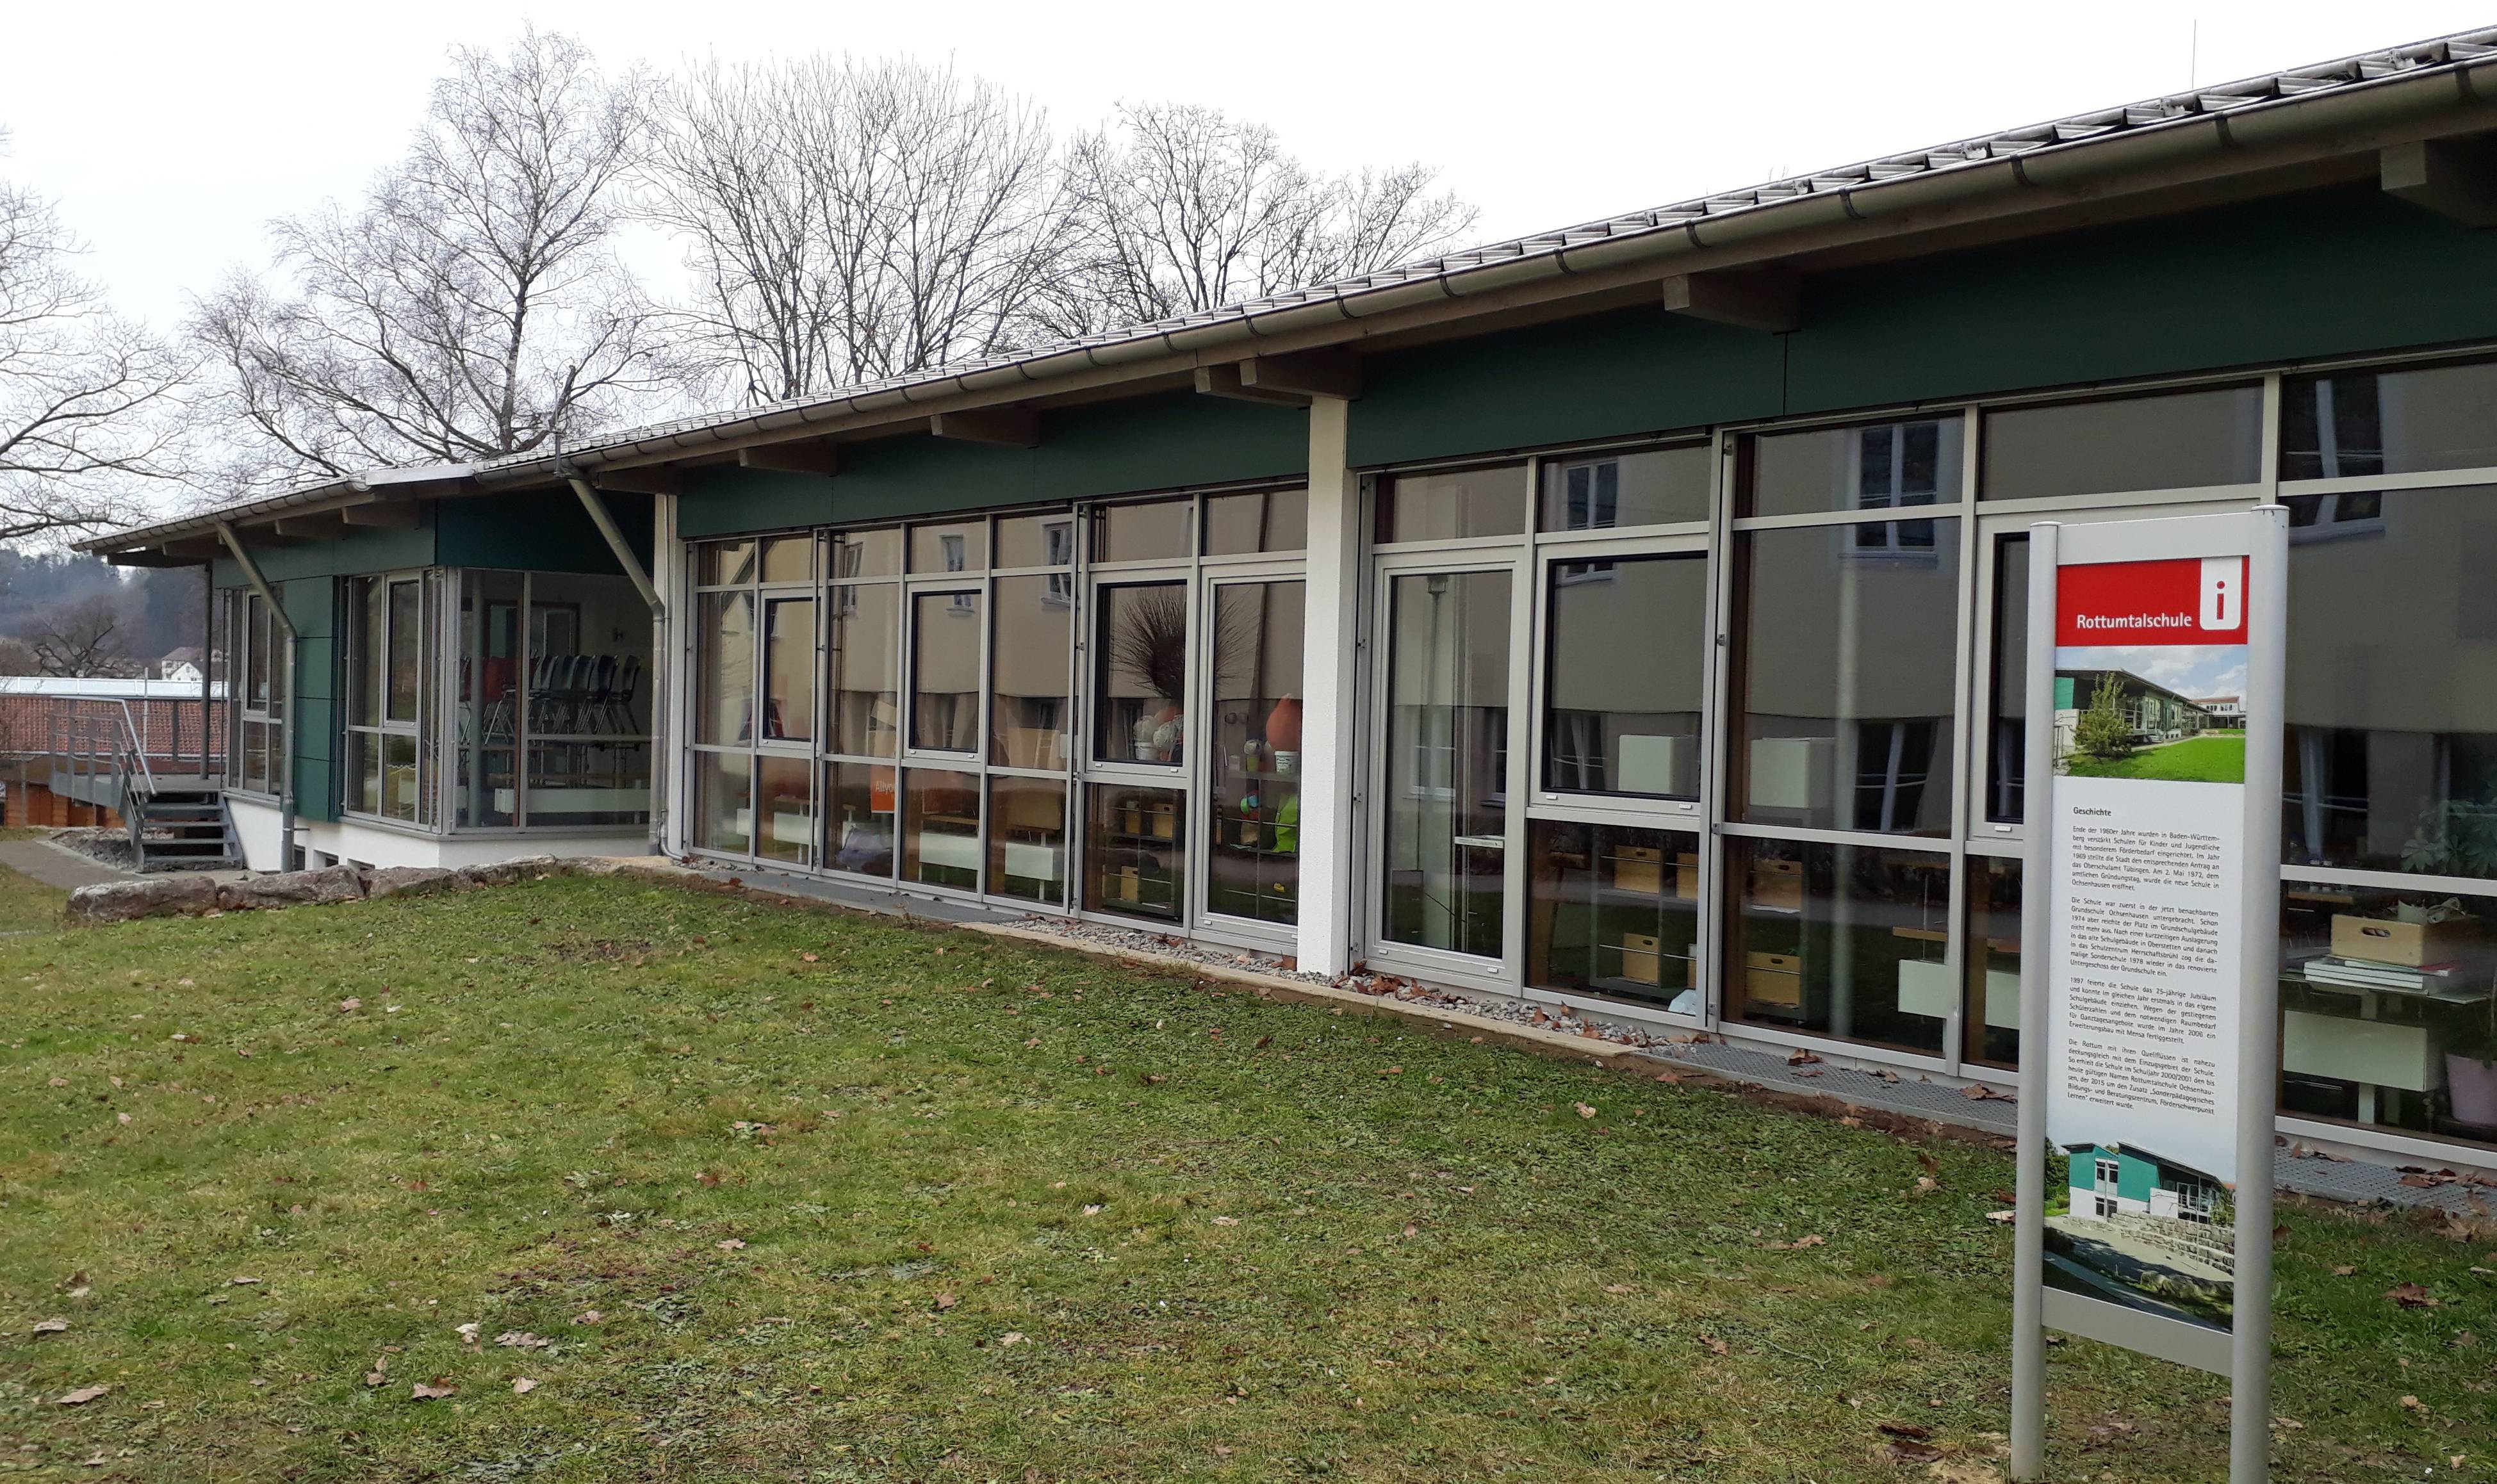  Rottumtalschule Ochsenhausen 